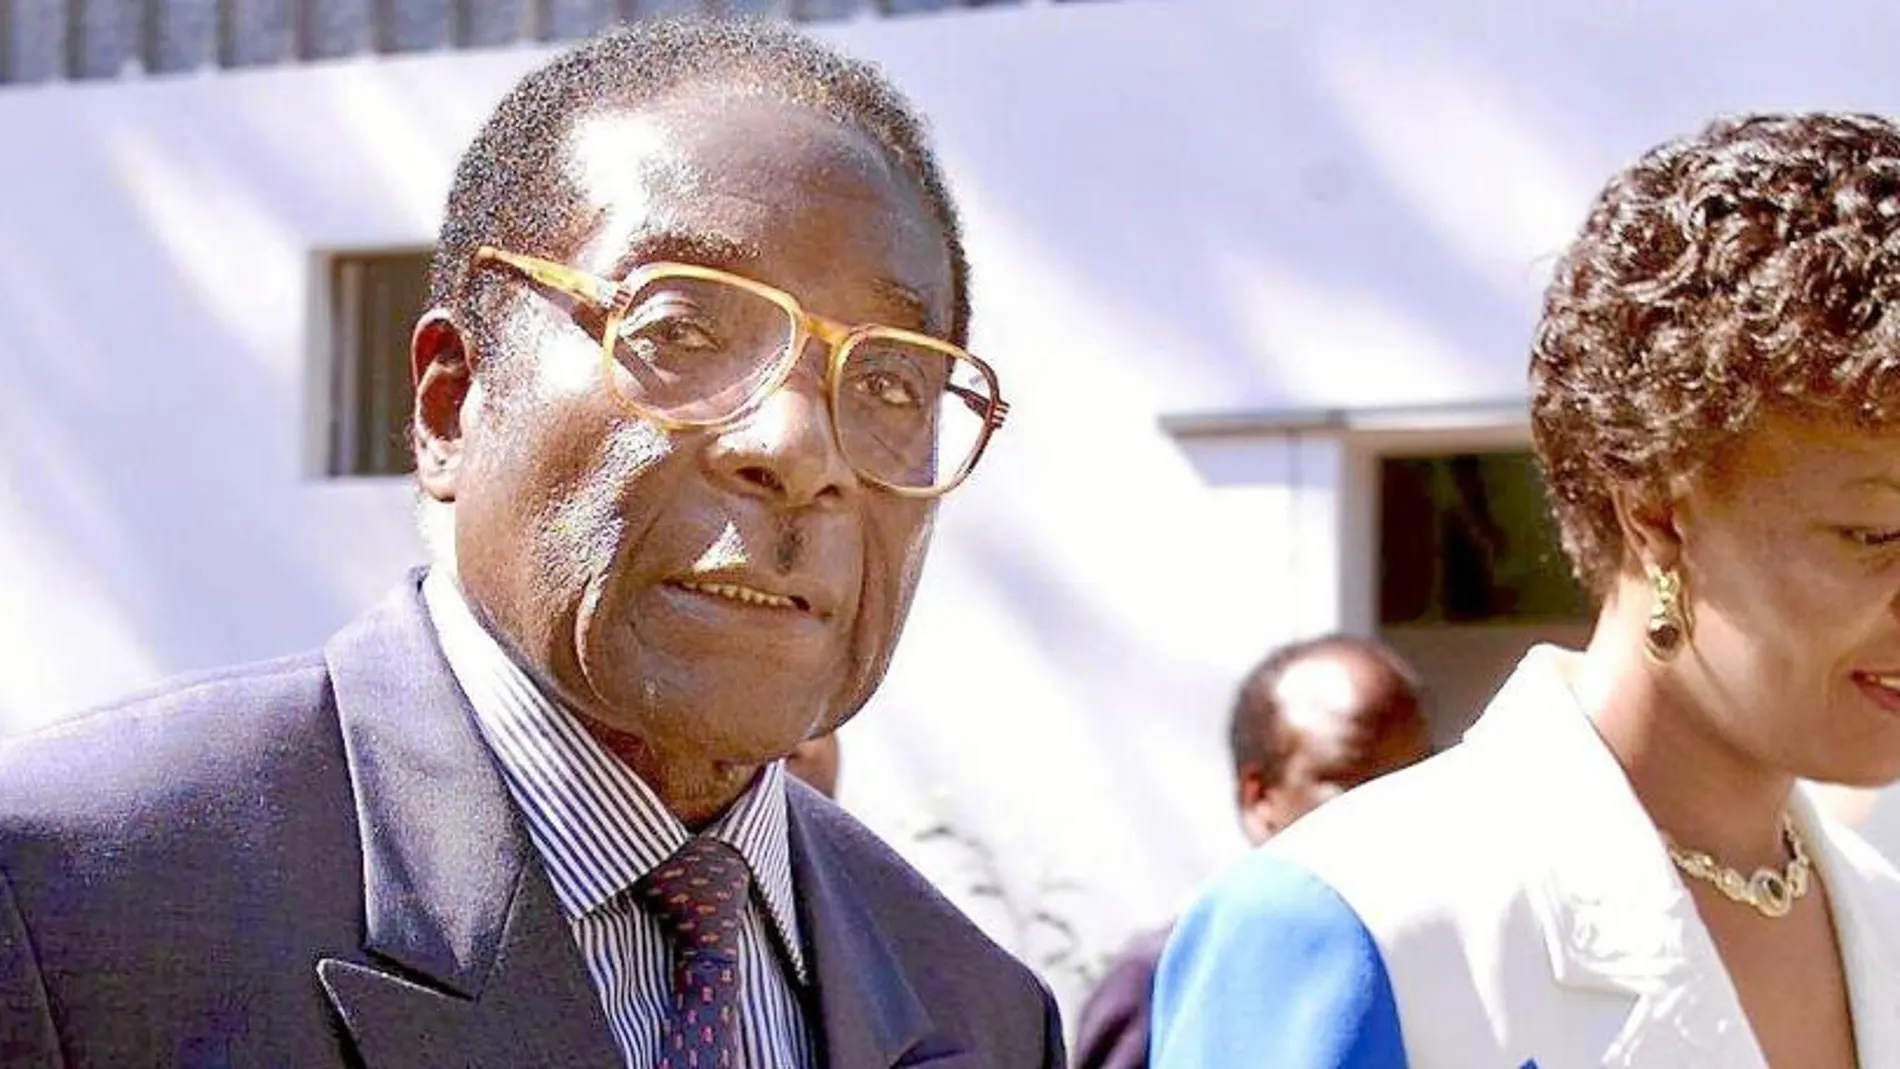 Mugabe y Grace contrajeron matrimonio en 1996 cuando ella tenía 31 años y él 72. Poco a poco, la primera dama de Zimbabue trató de hacerse con las riendas del país y formó su propia camarilla, aliada con las juventudes del partido único